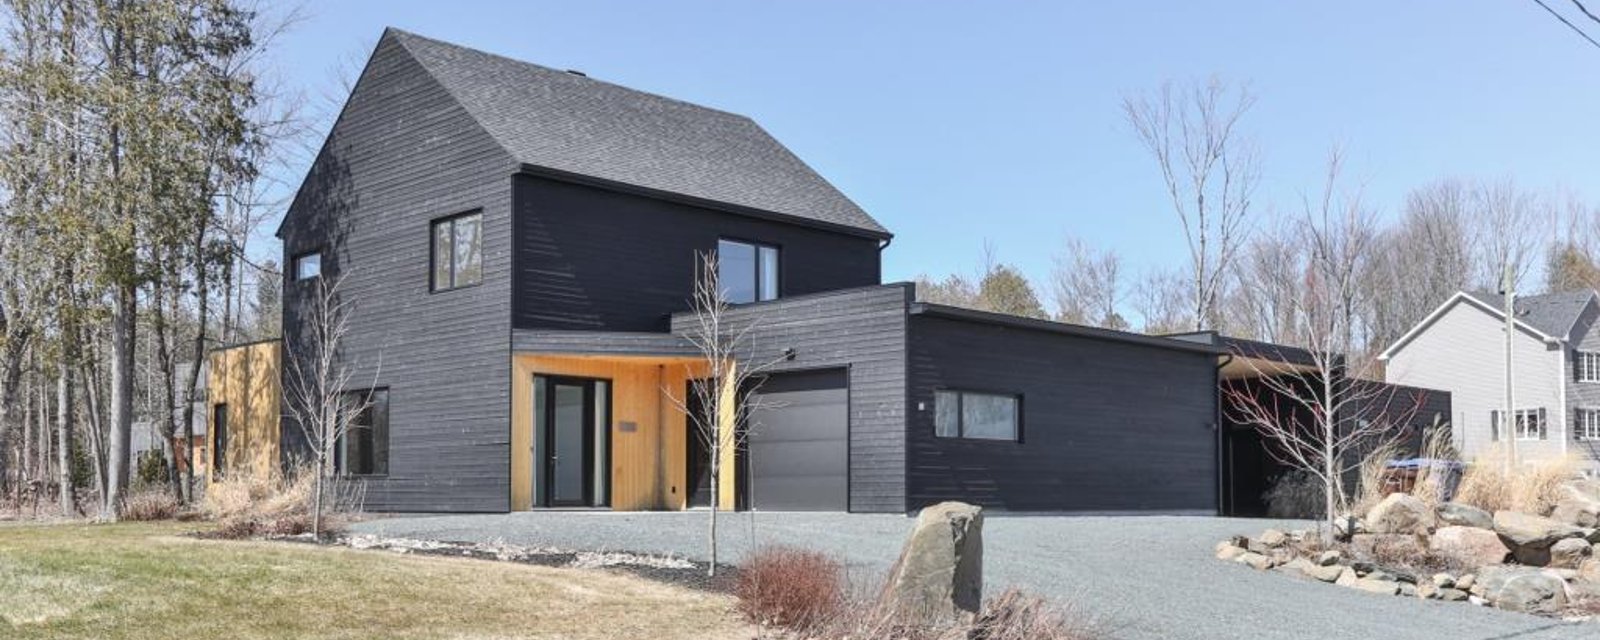 Magnifique résidence de 15 pièces baignée de lumière dotée d'un style minimaliste à la scandinave